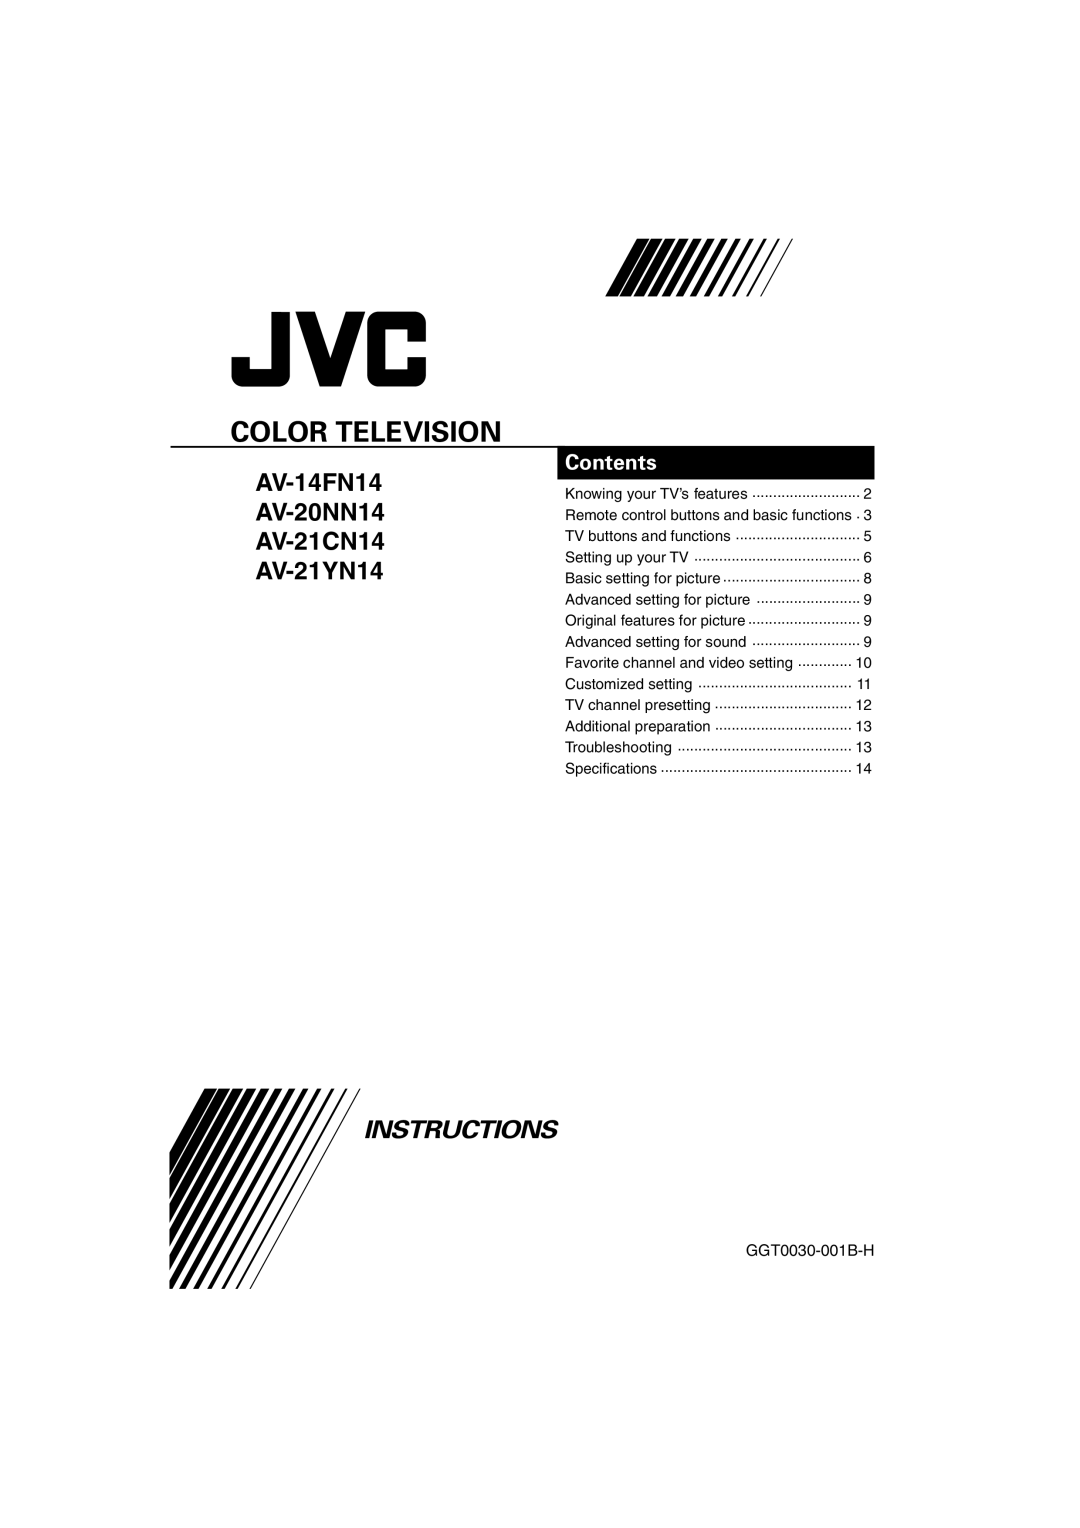 JVC specifications Color Television, AV-14FN14 AV-20NN14 AV-21CN14 AV-21YN14, Instructions, Contents, GGT0030-001B-H 